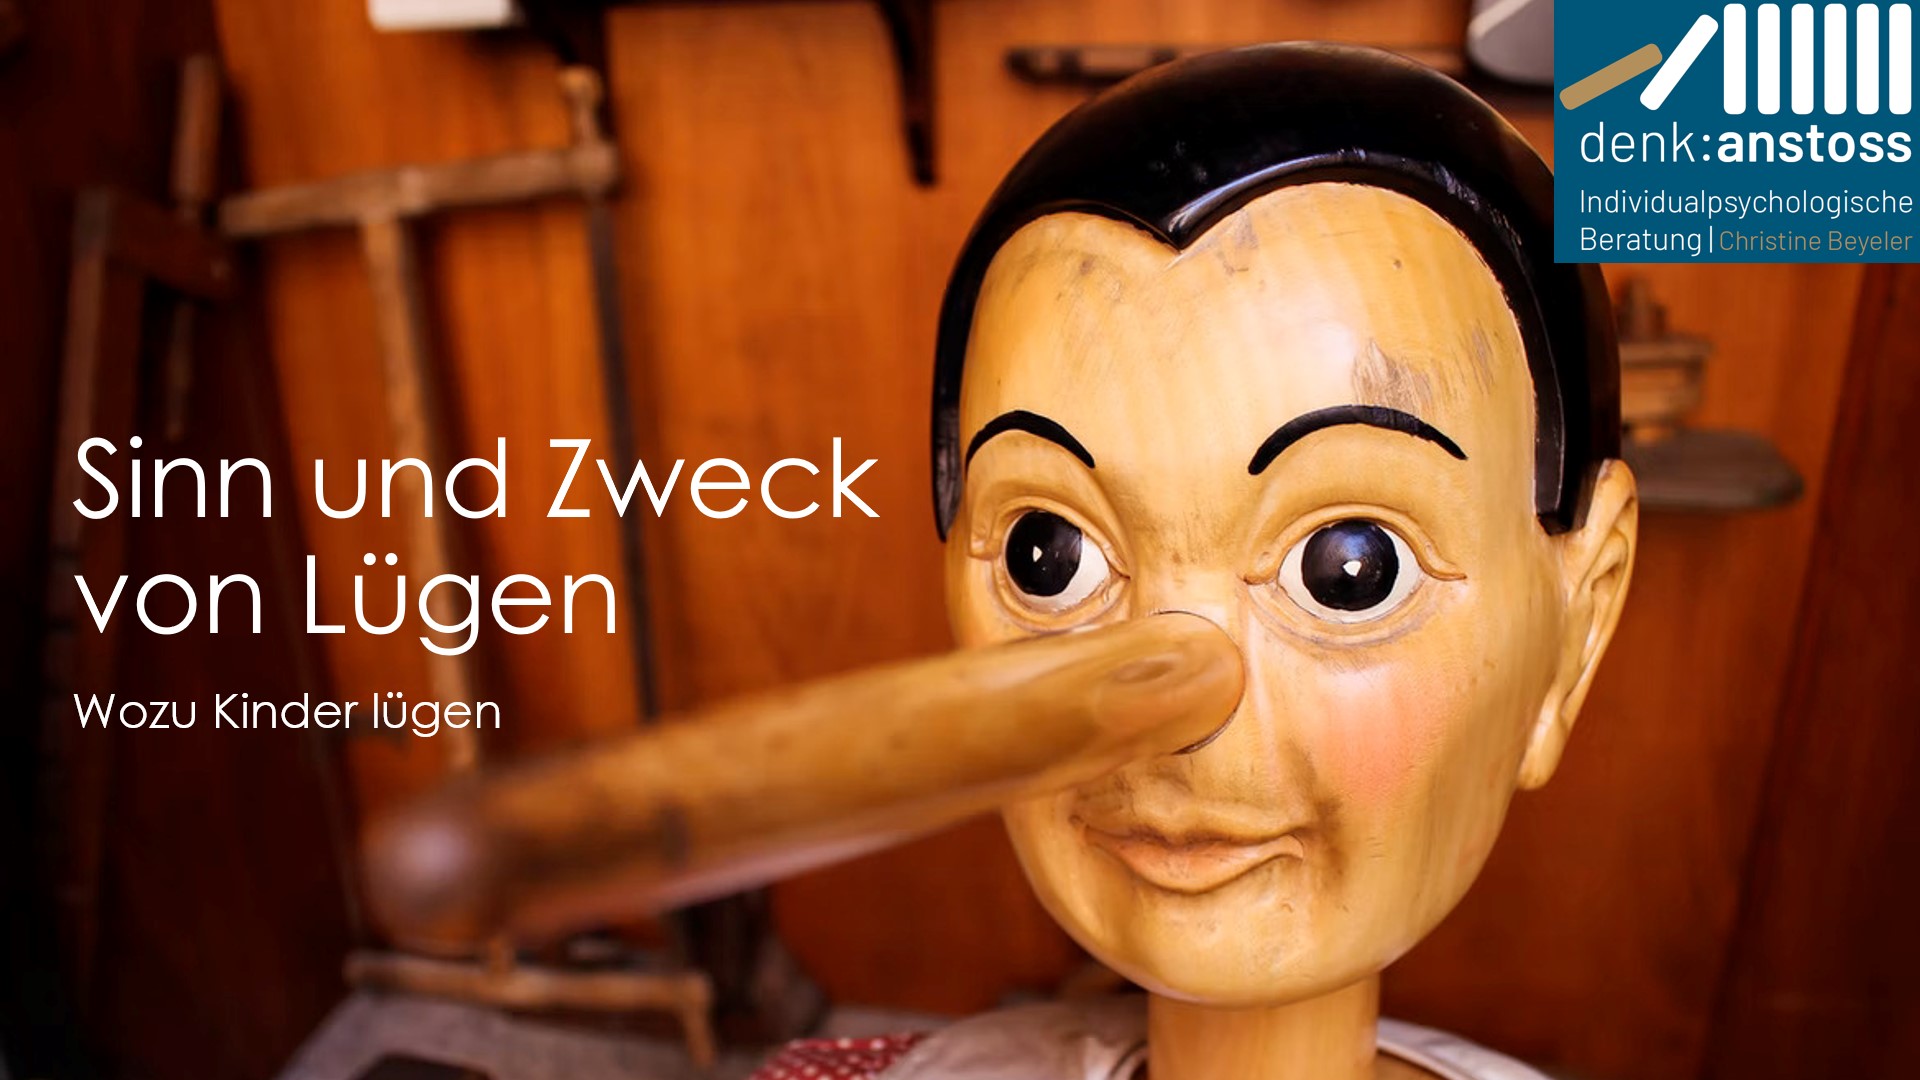 Pinocchio mit langer Nase - Header zum Seminar "Sinn und Zweck von Lügen"